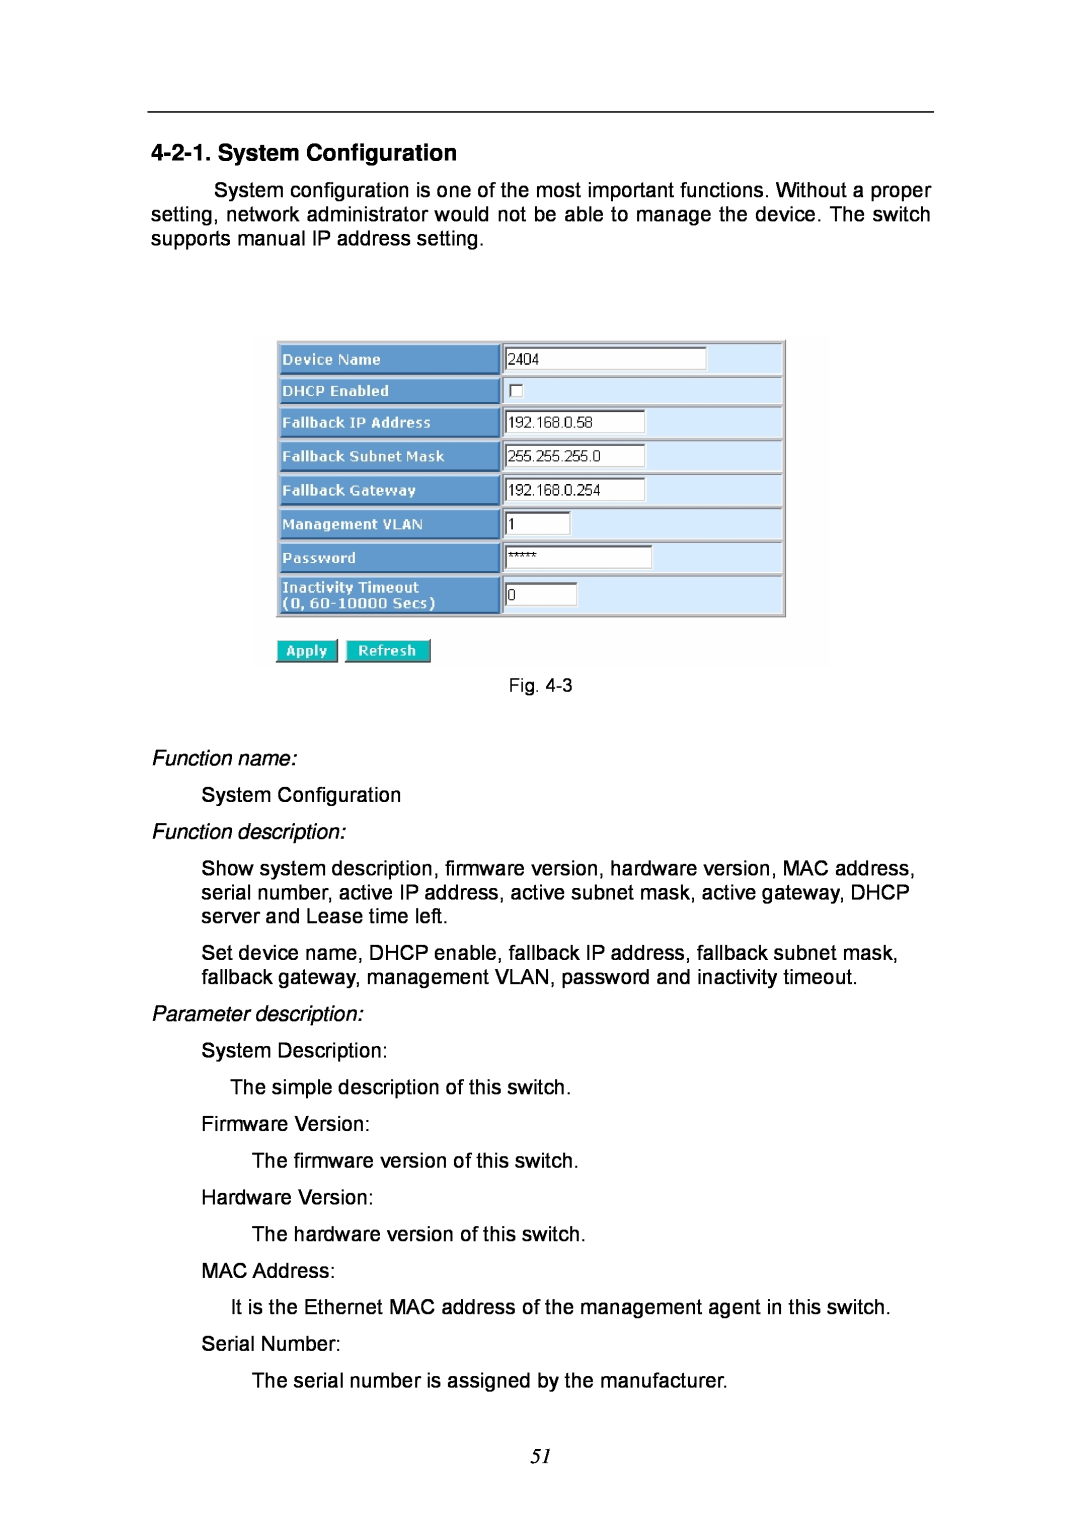 KTI Networks KGS-2404 manual System Configuration, Function name, Function description, Parameter description 